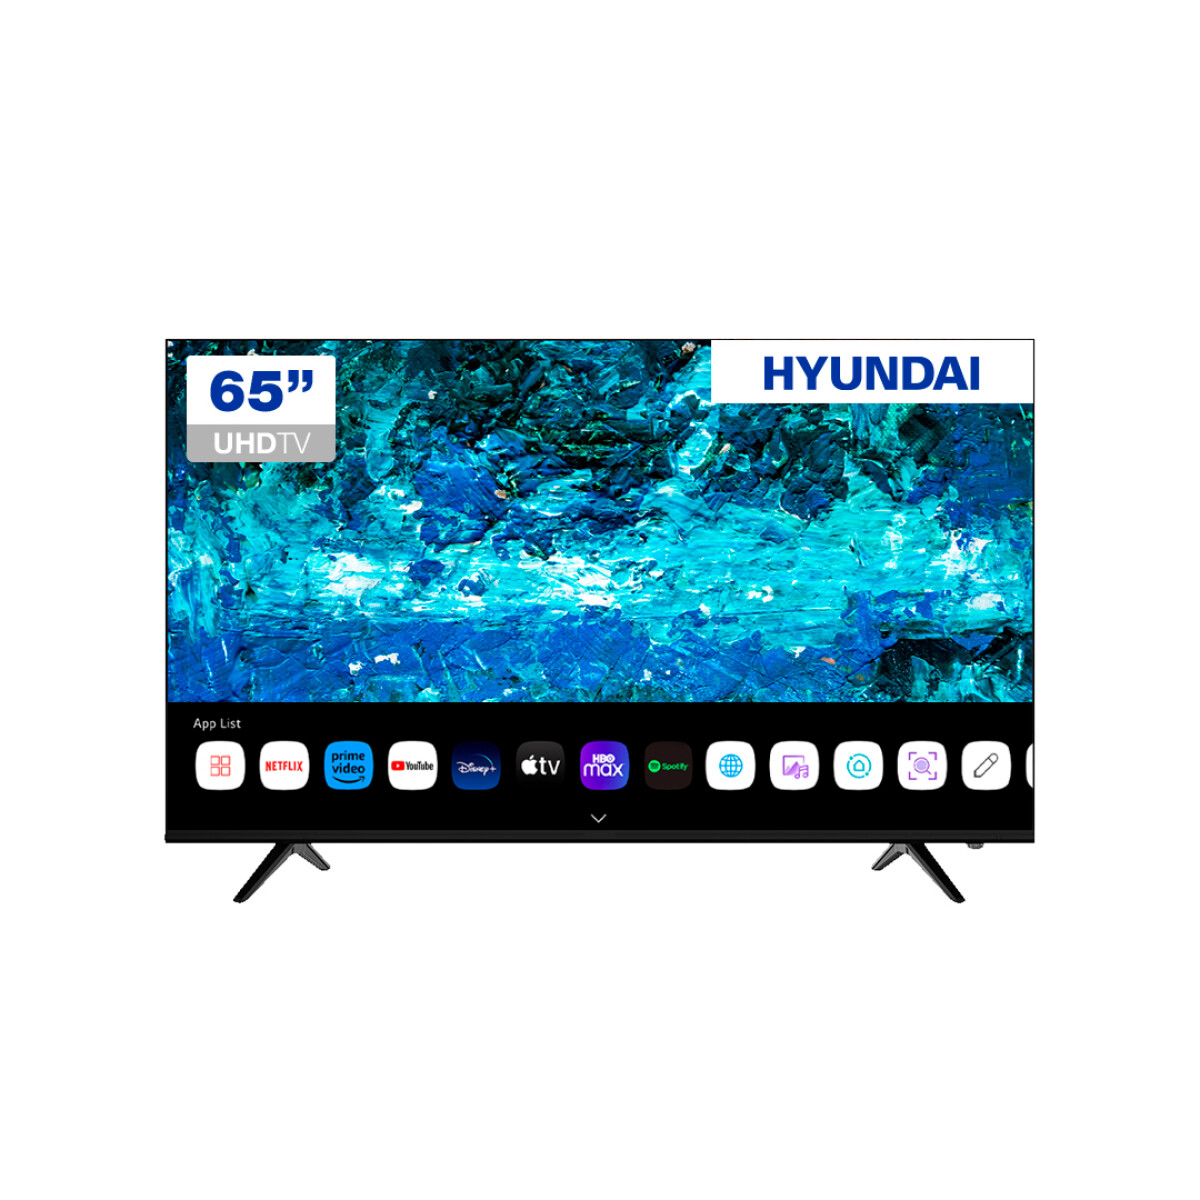 Smart Tv Hyundai 65' 4k Ultra Hd Web Os Con Magic Remote 